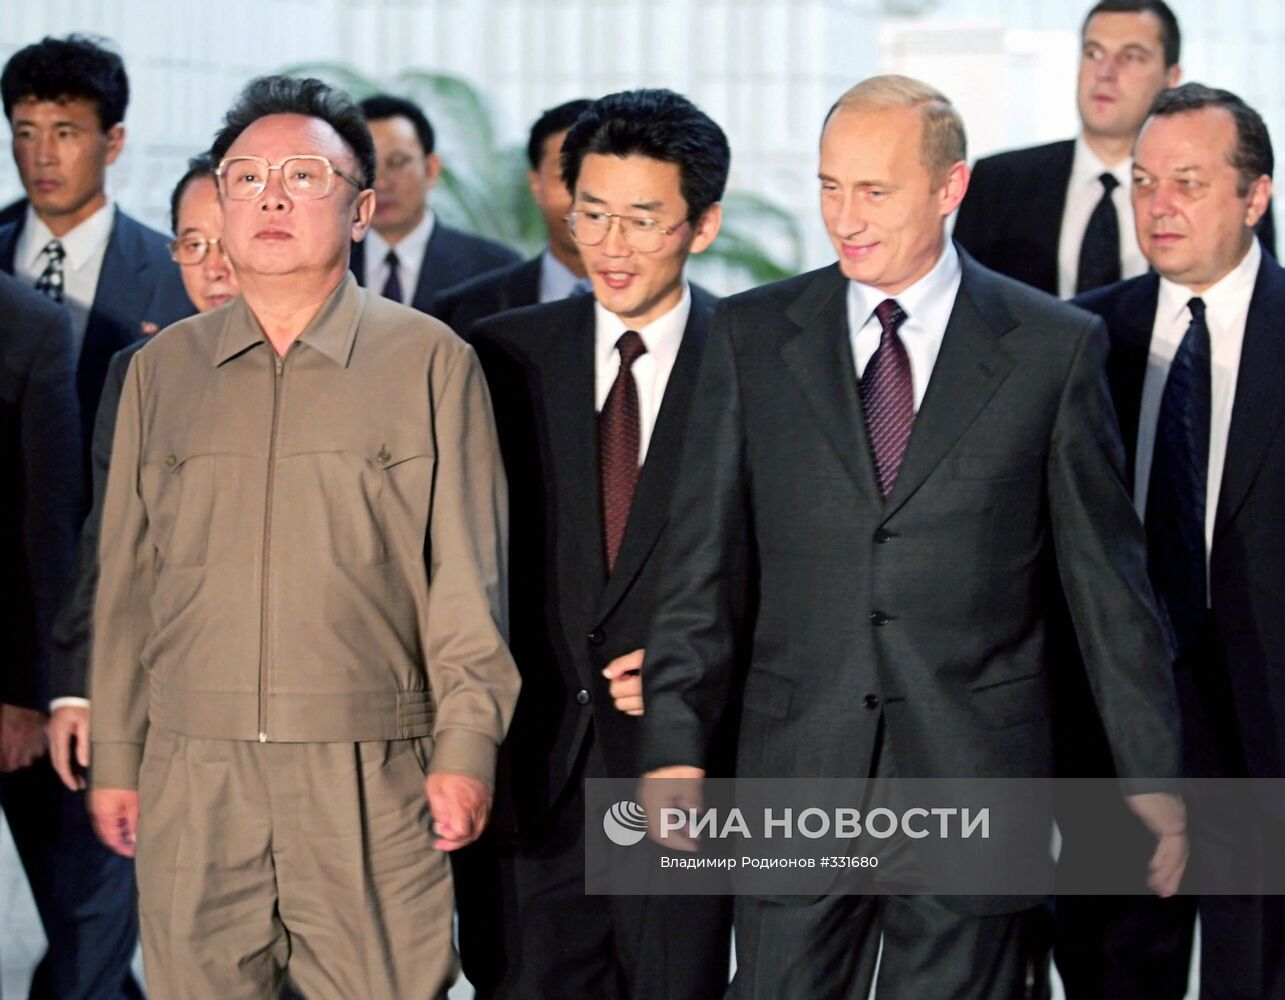 Президент РФ Владимир Путин и лидер КНДР Ким Чен Ир